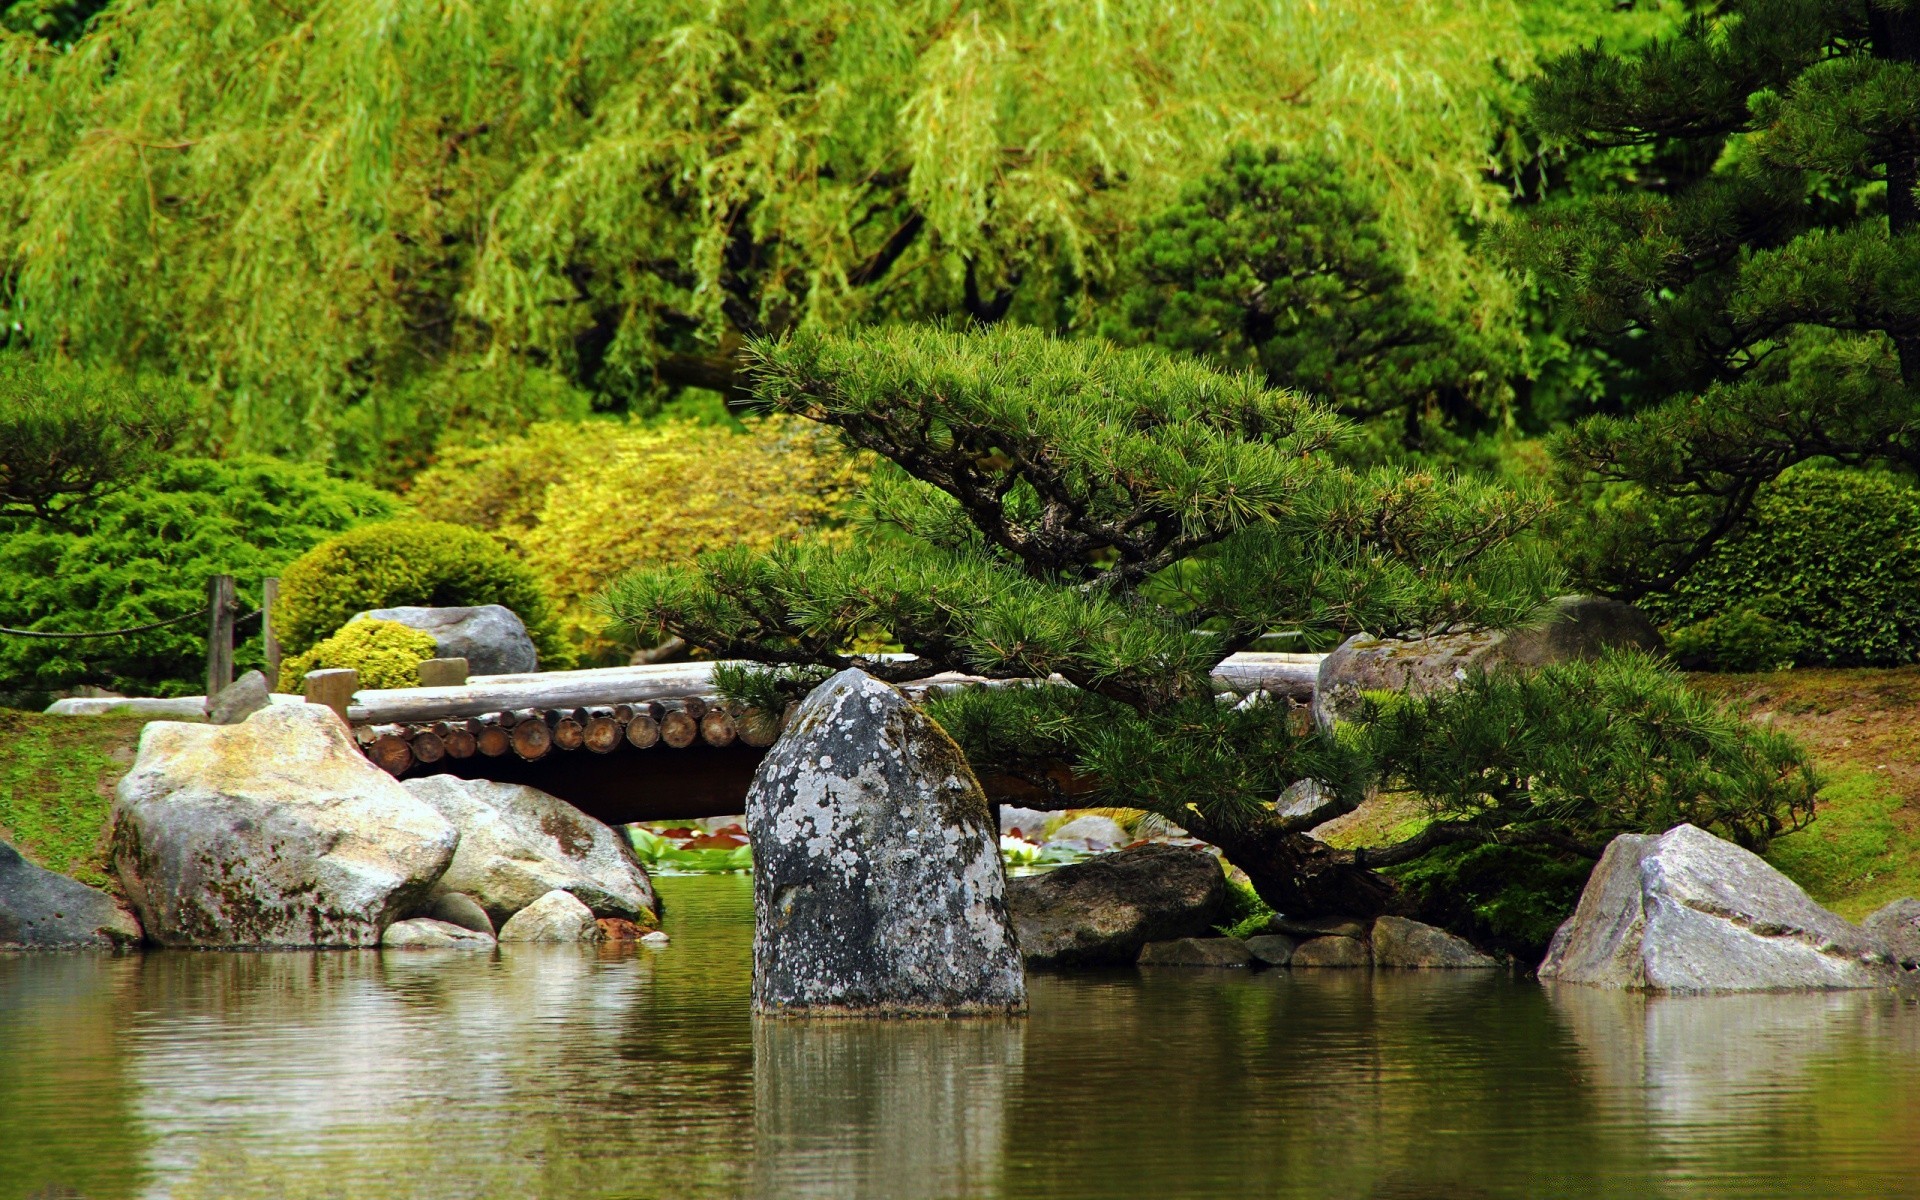 озера воды река природа пейзаж парк дерево на открытом воздухе бассейн путешествия рок камень живописный поток отражение древесины лето трава горы